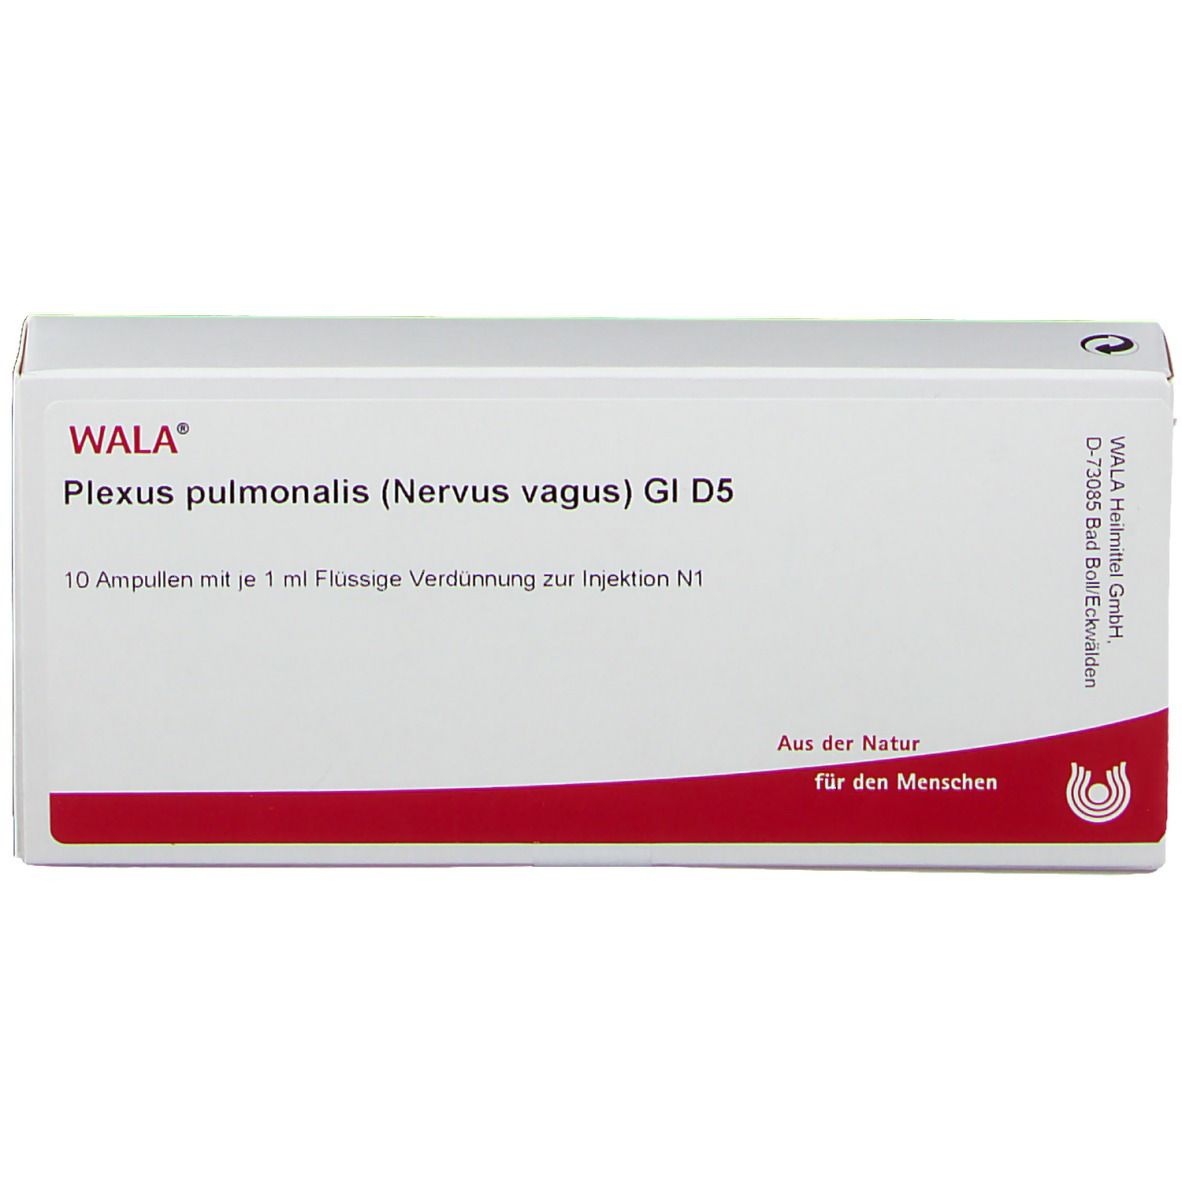 WALA® Plexus pulmonalis Nervus vagus Gl D 5